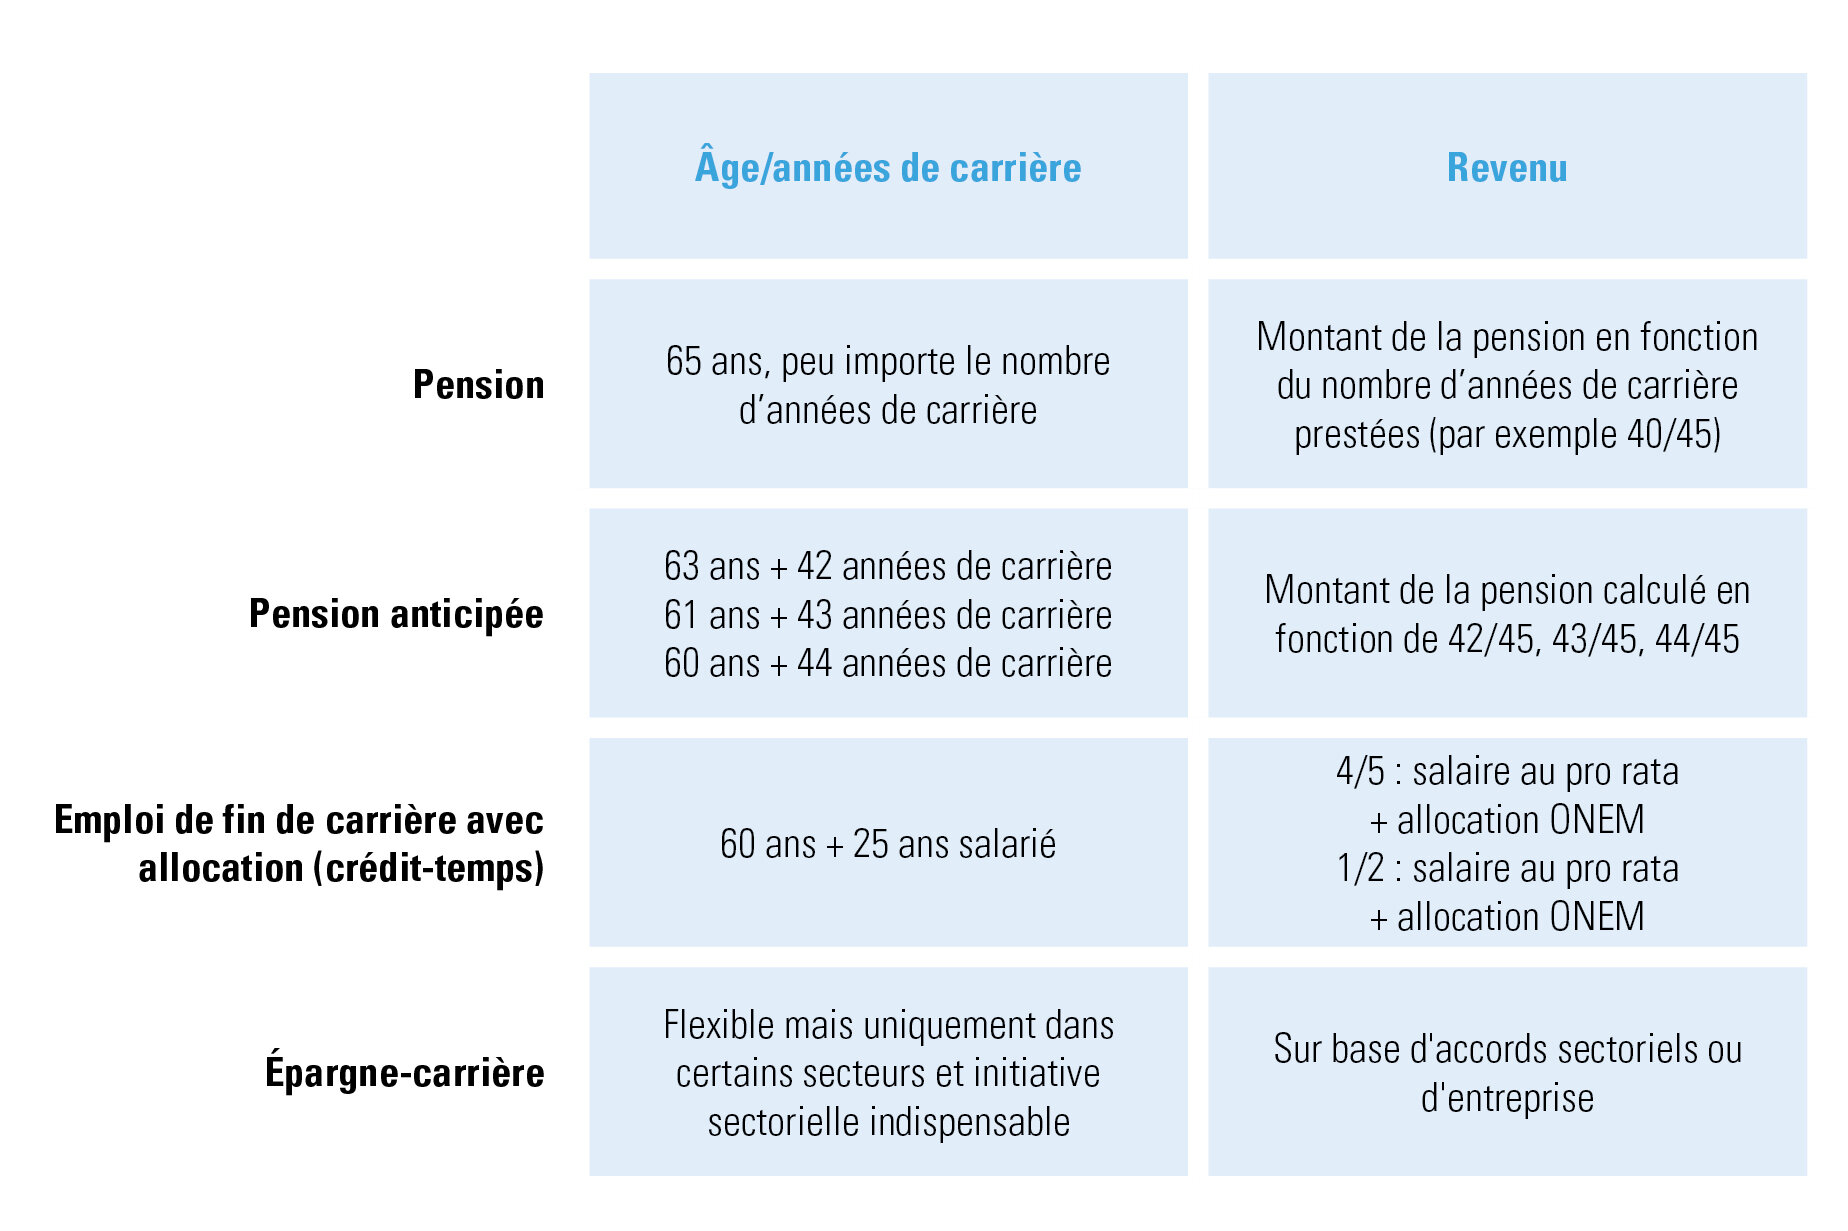 Bref aperçu des options qui s’offrent aux travailleurs belges en matière de pension